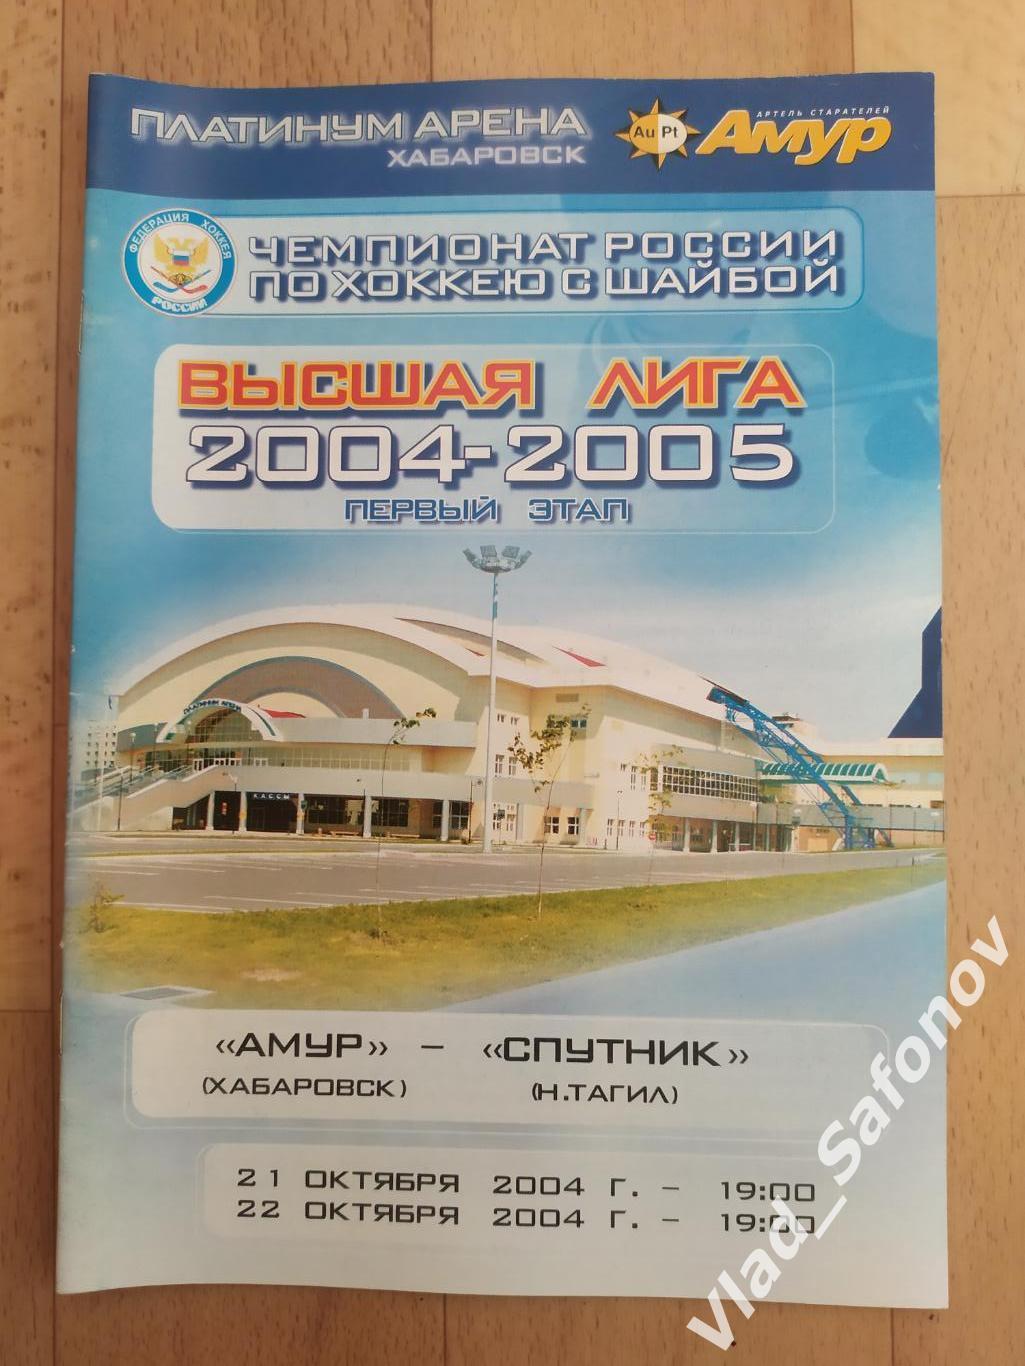 Амур(Хабаровск) - Спутник(Нижний Тагил). Высшая лига. 21-22/10/2004